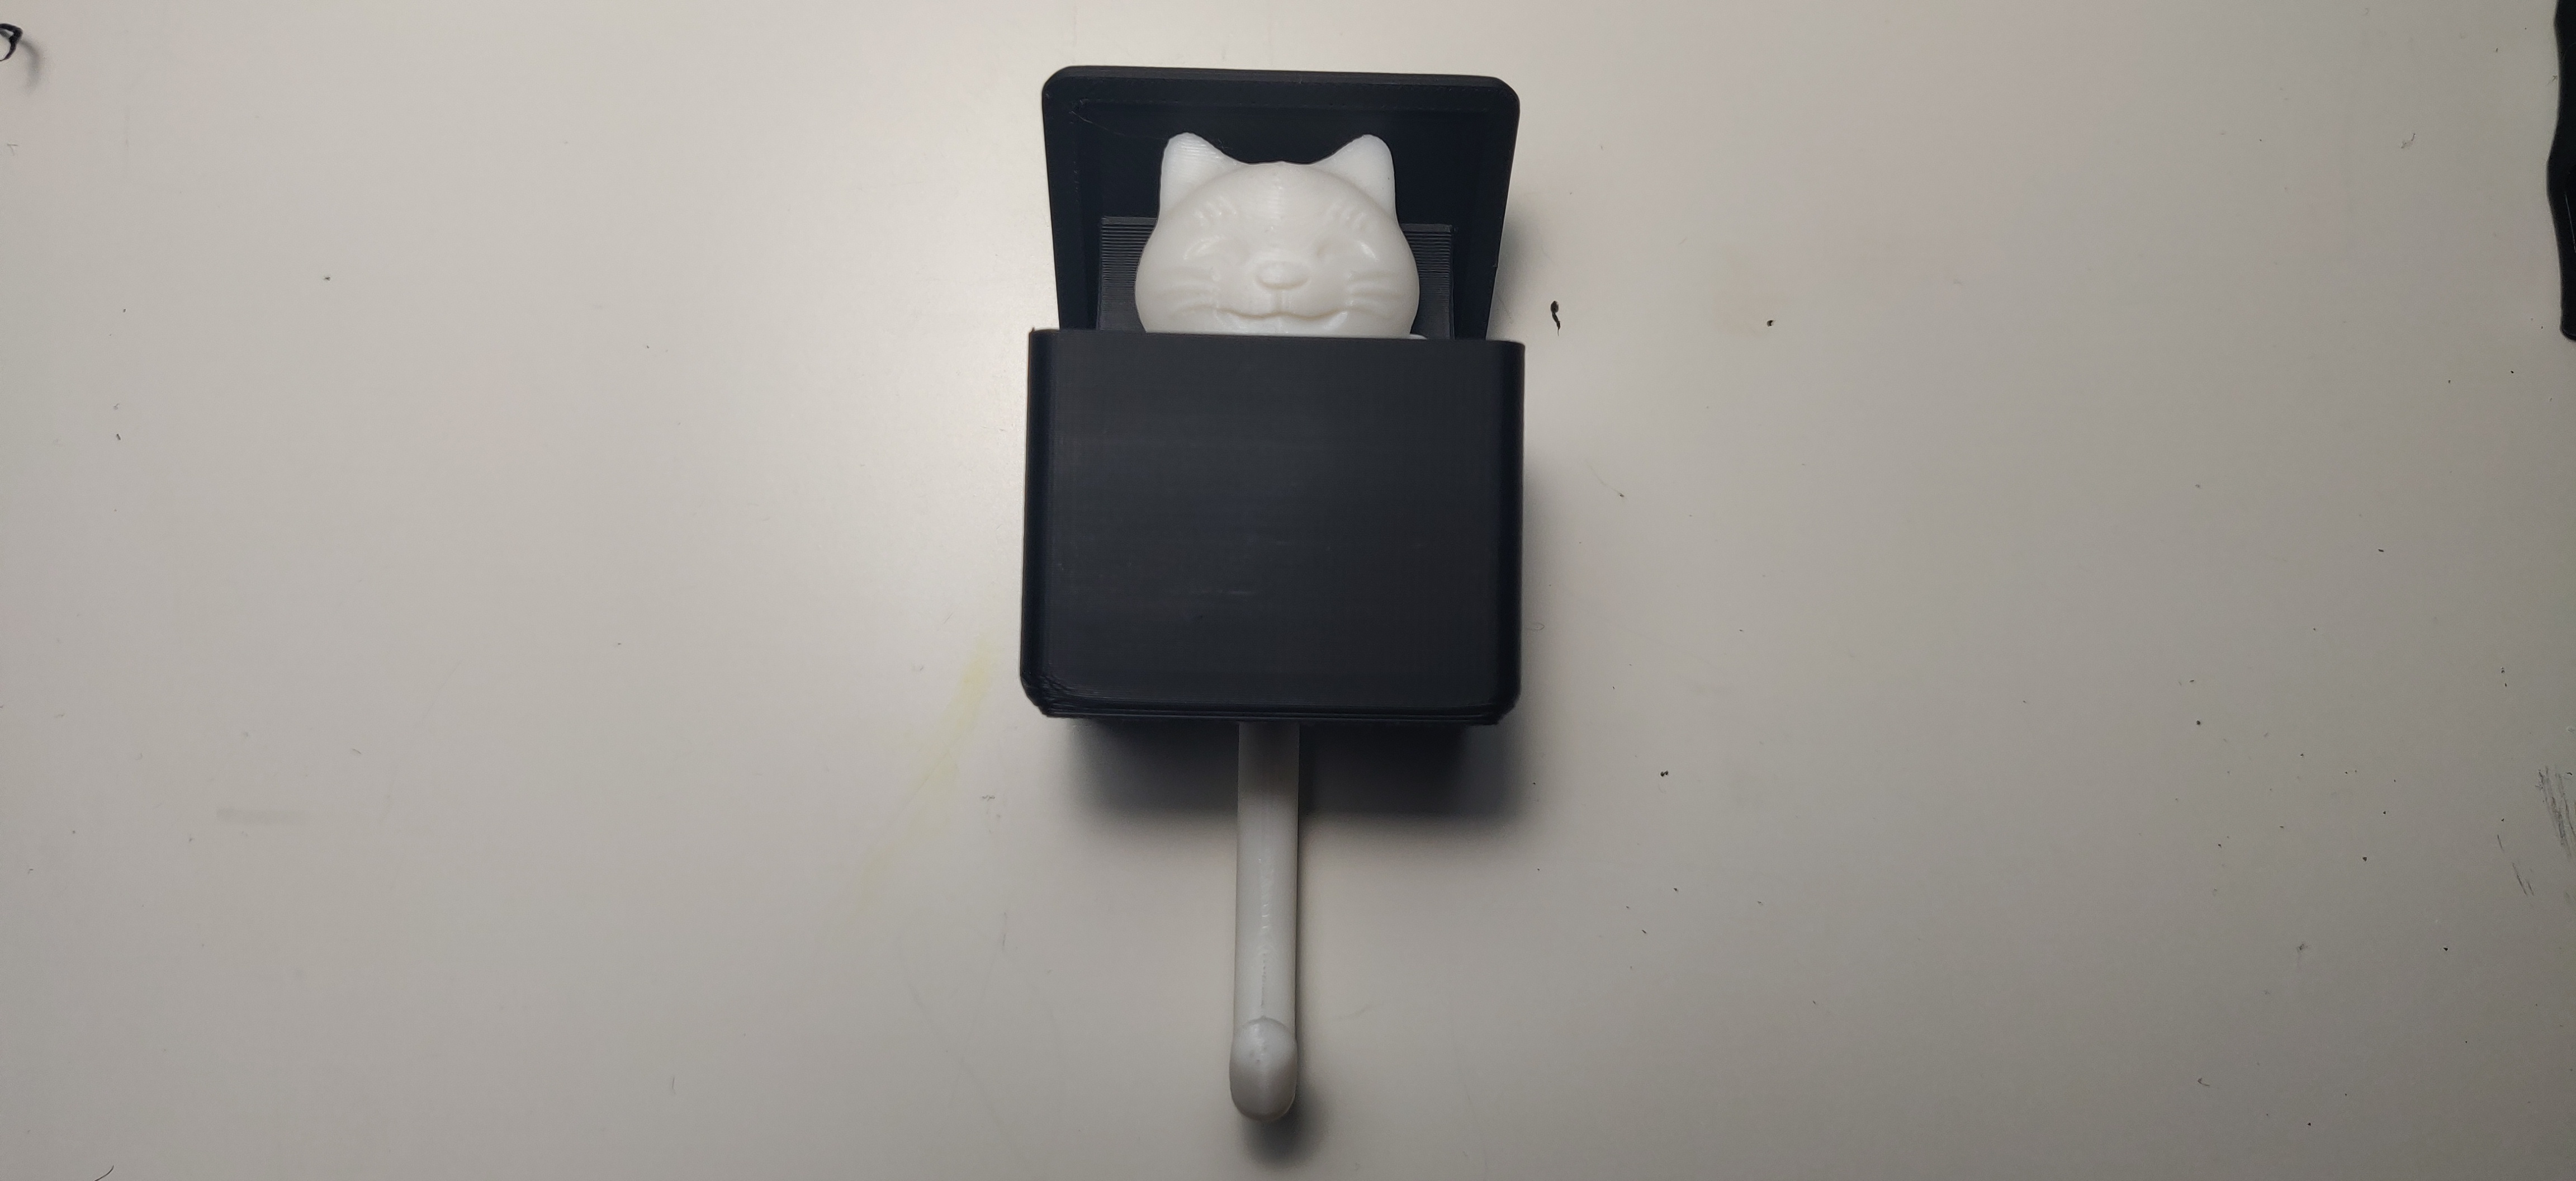 Fixed Box Cat key hook by RocKz